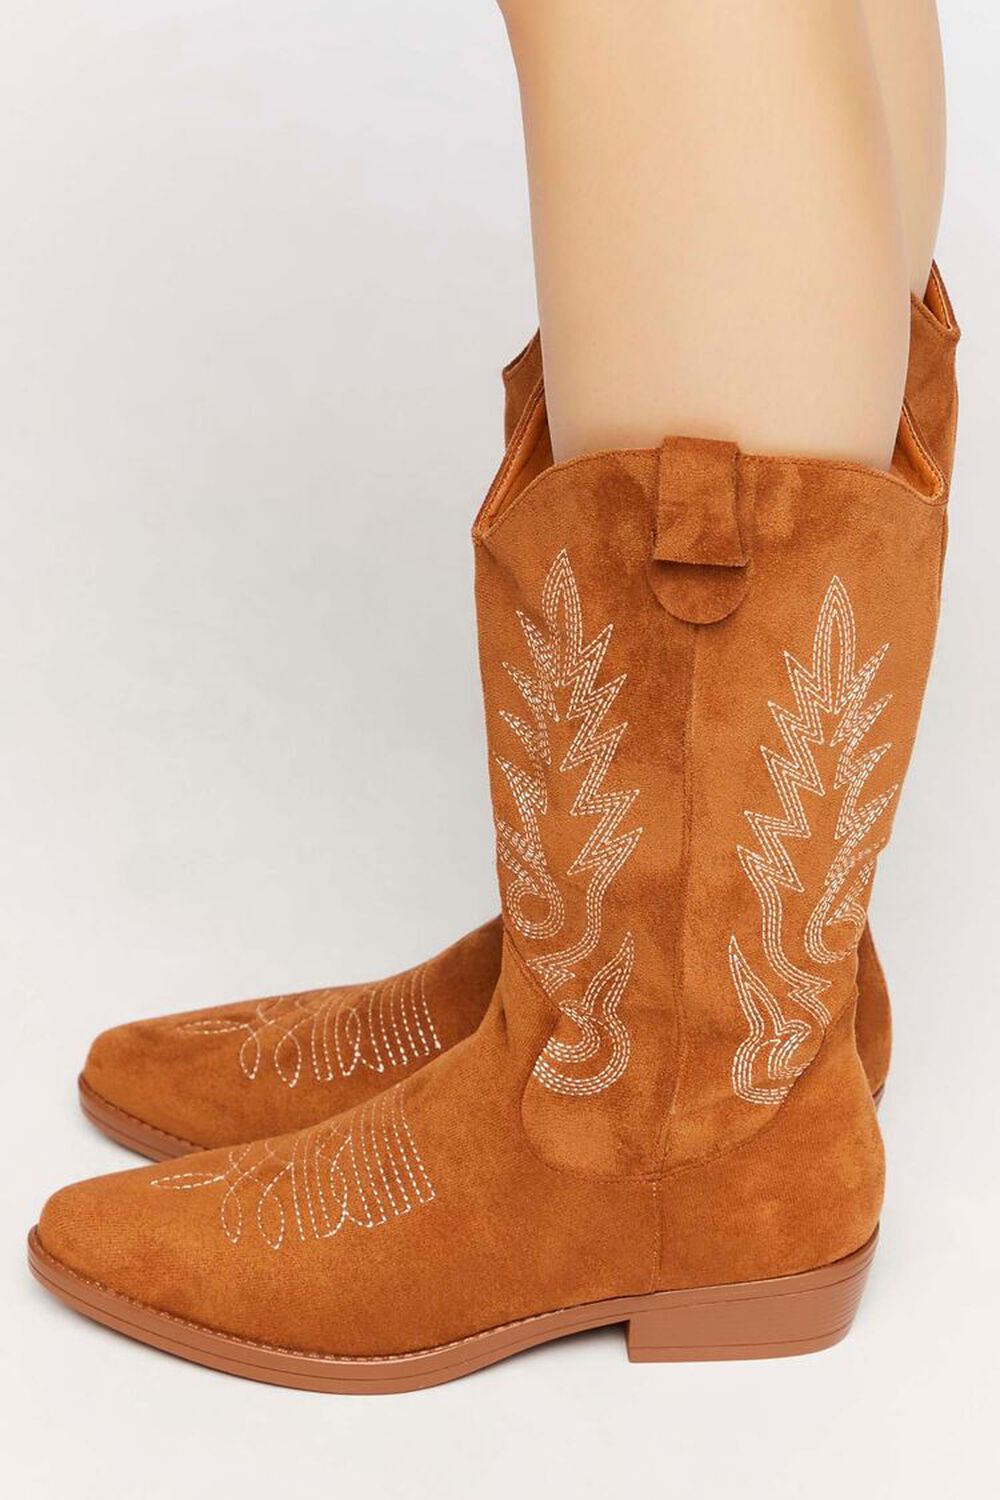 TAN Faux Suede Cowboy Boots, image 2